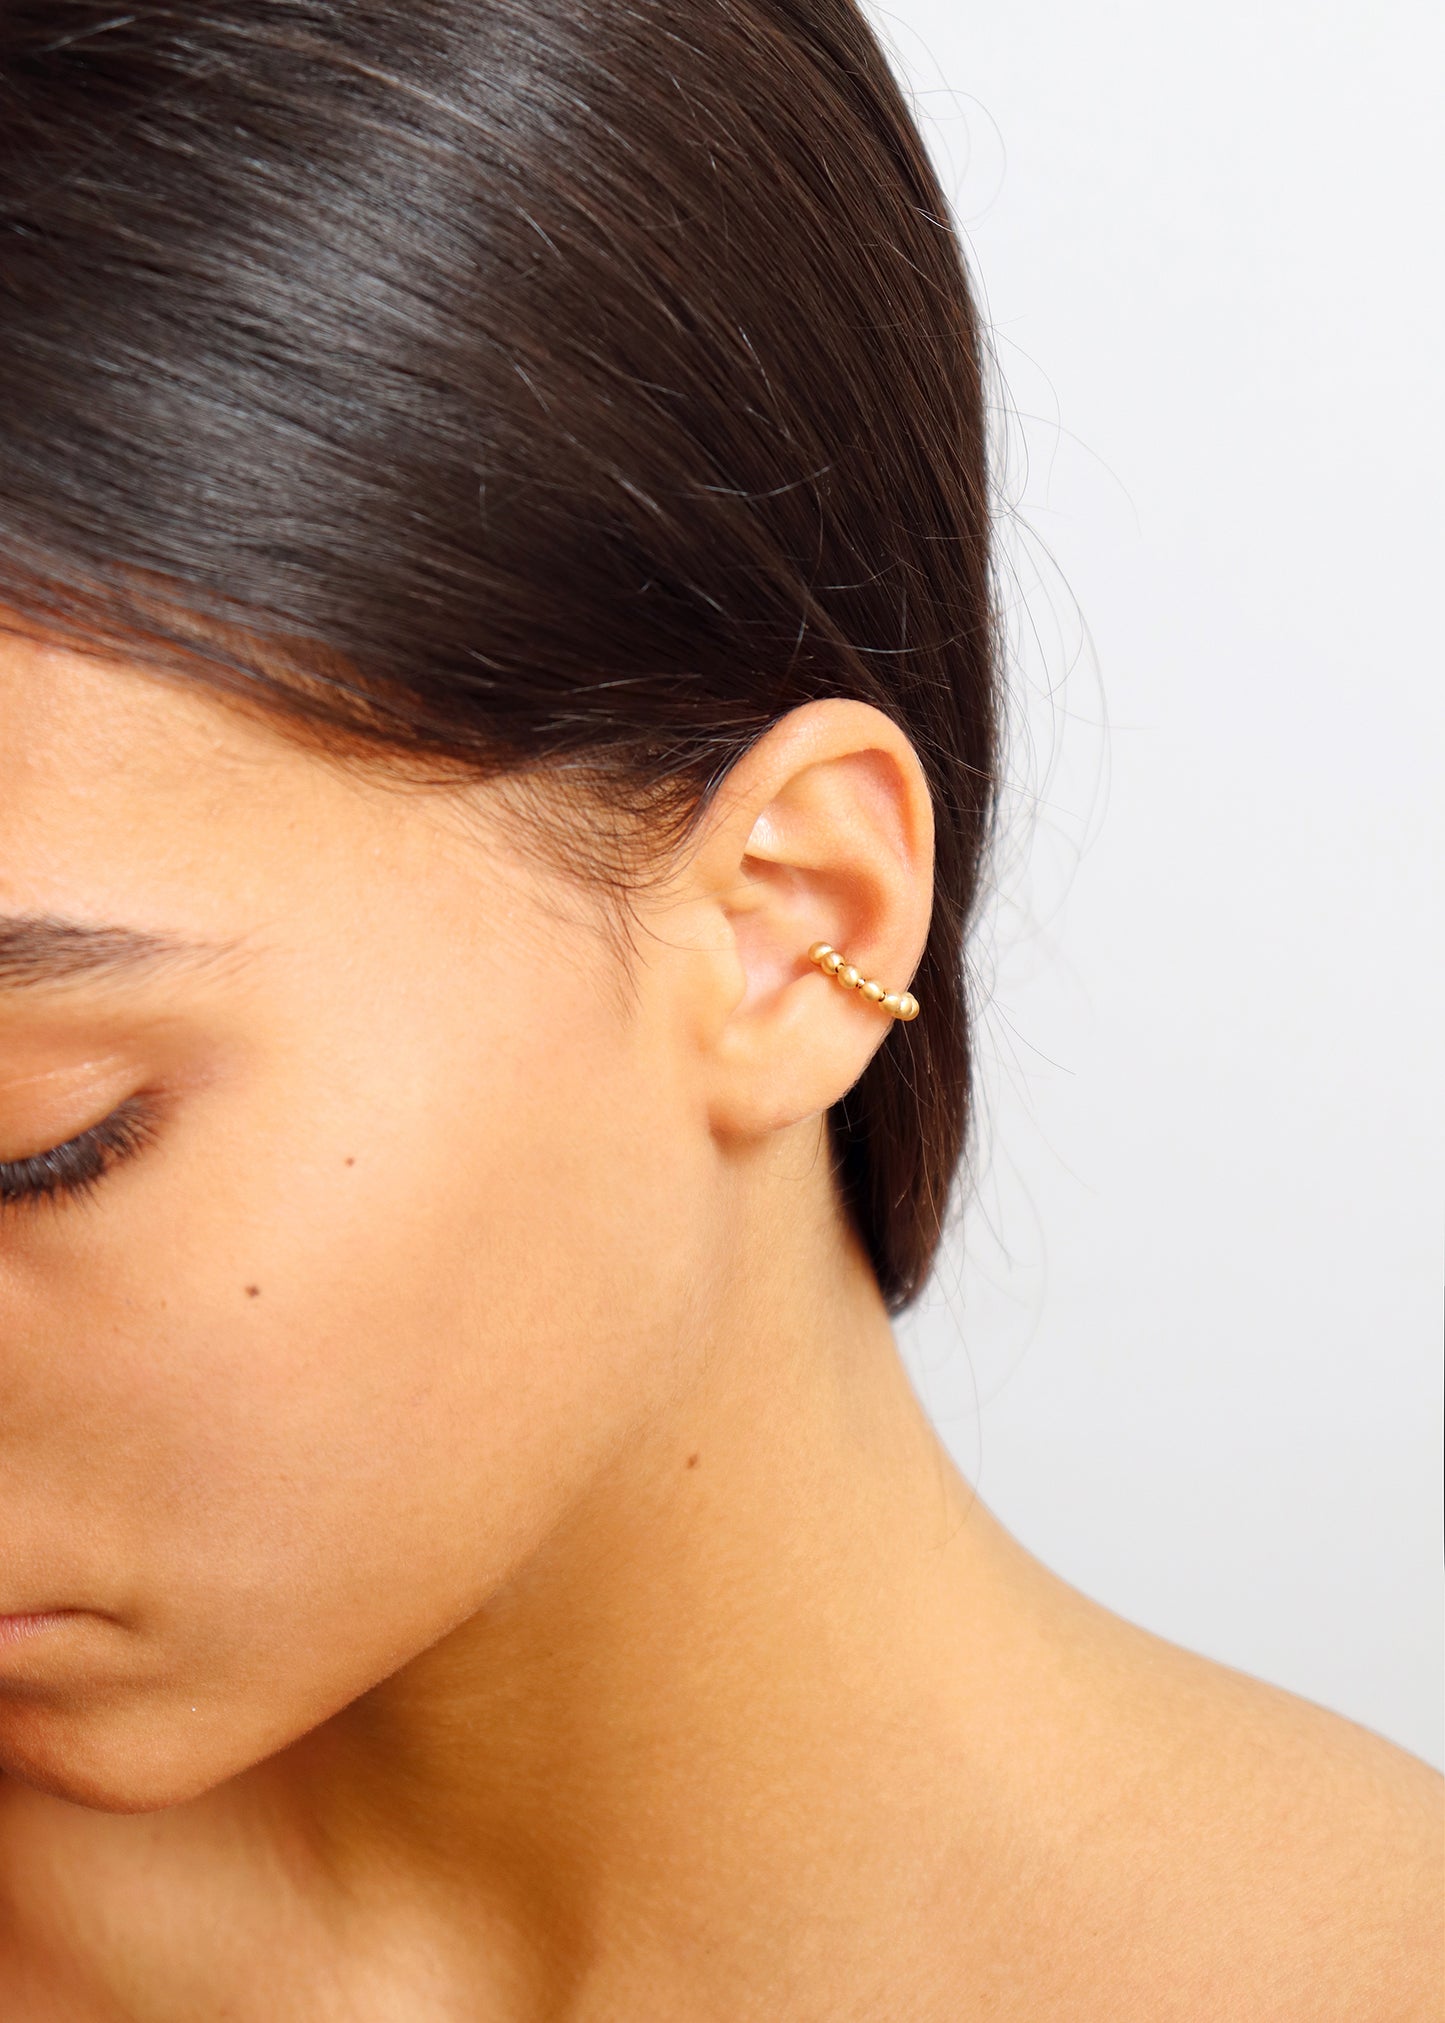 18KT yellow gold earring ear cuff worn by a female ear - Sfere